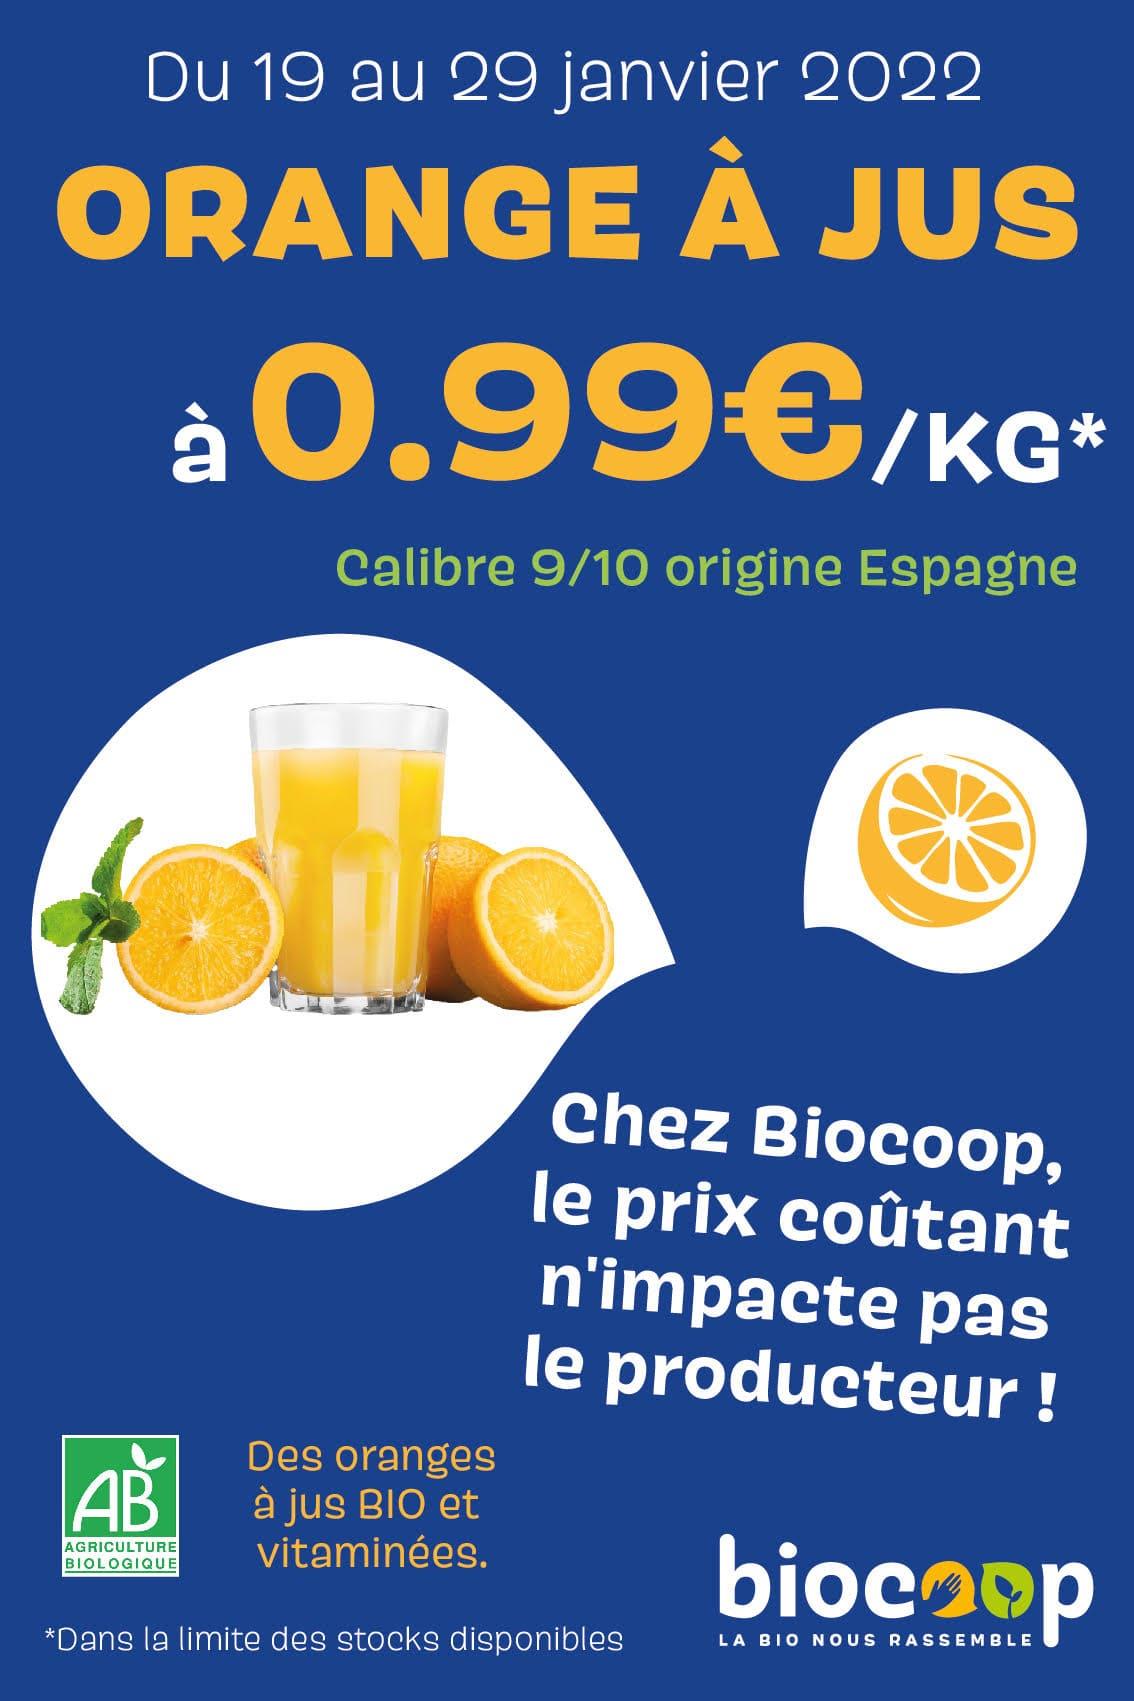 Du 19 au 29 Janvier 2022, venez profiter des Oranges à jus à 0,99€/kg.